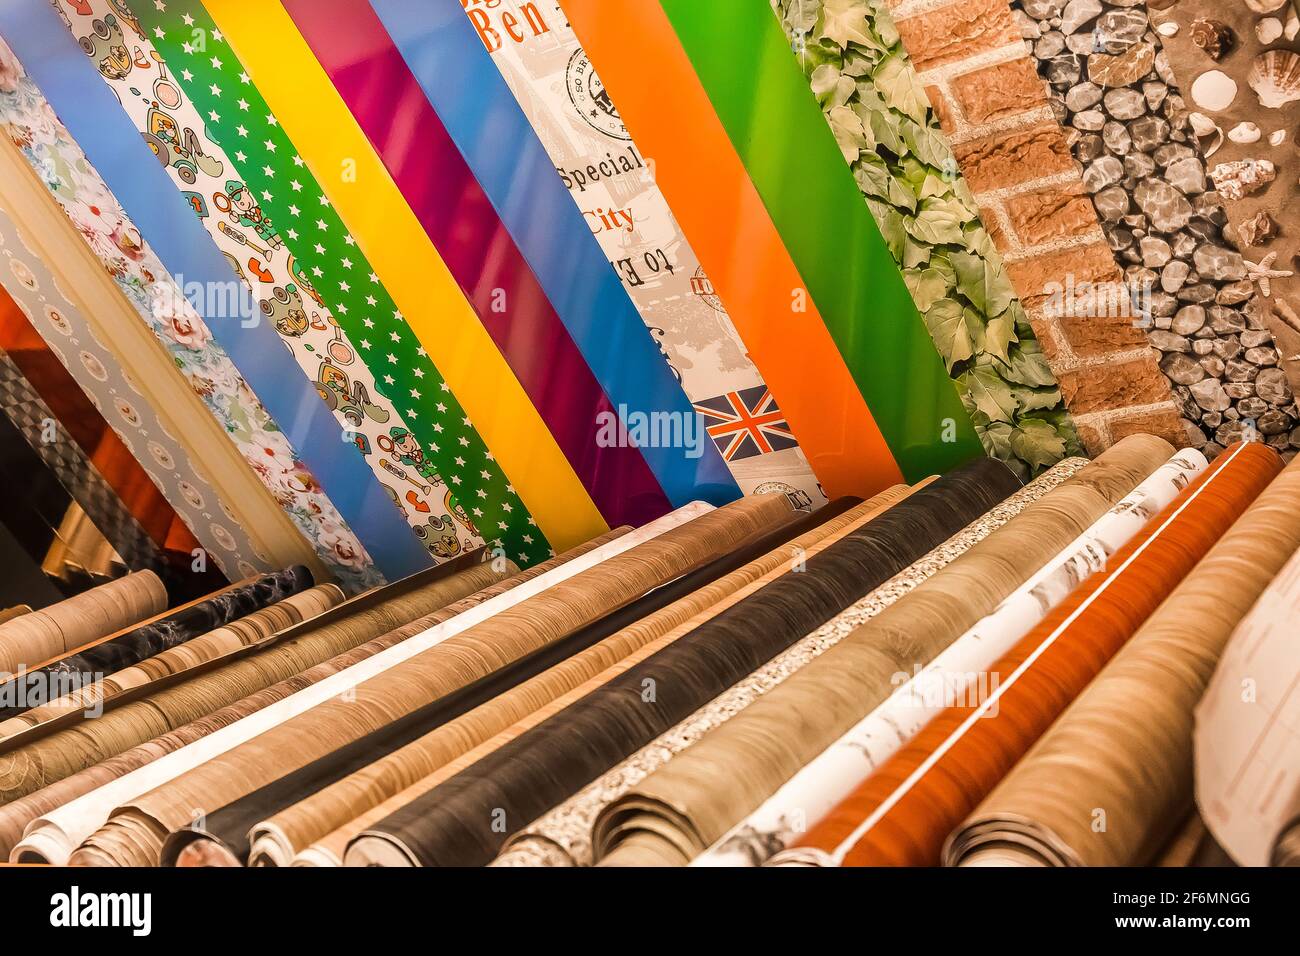 Belarus, Minsk - 19 décembre 2019: Différents échantillons de papier peint couleur en rouleaux pour la conception intérieure dans le magasin. Banque D'Images